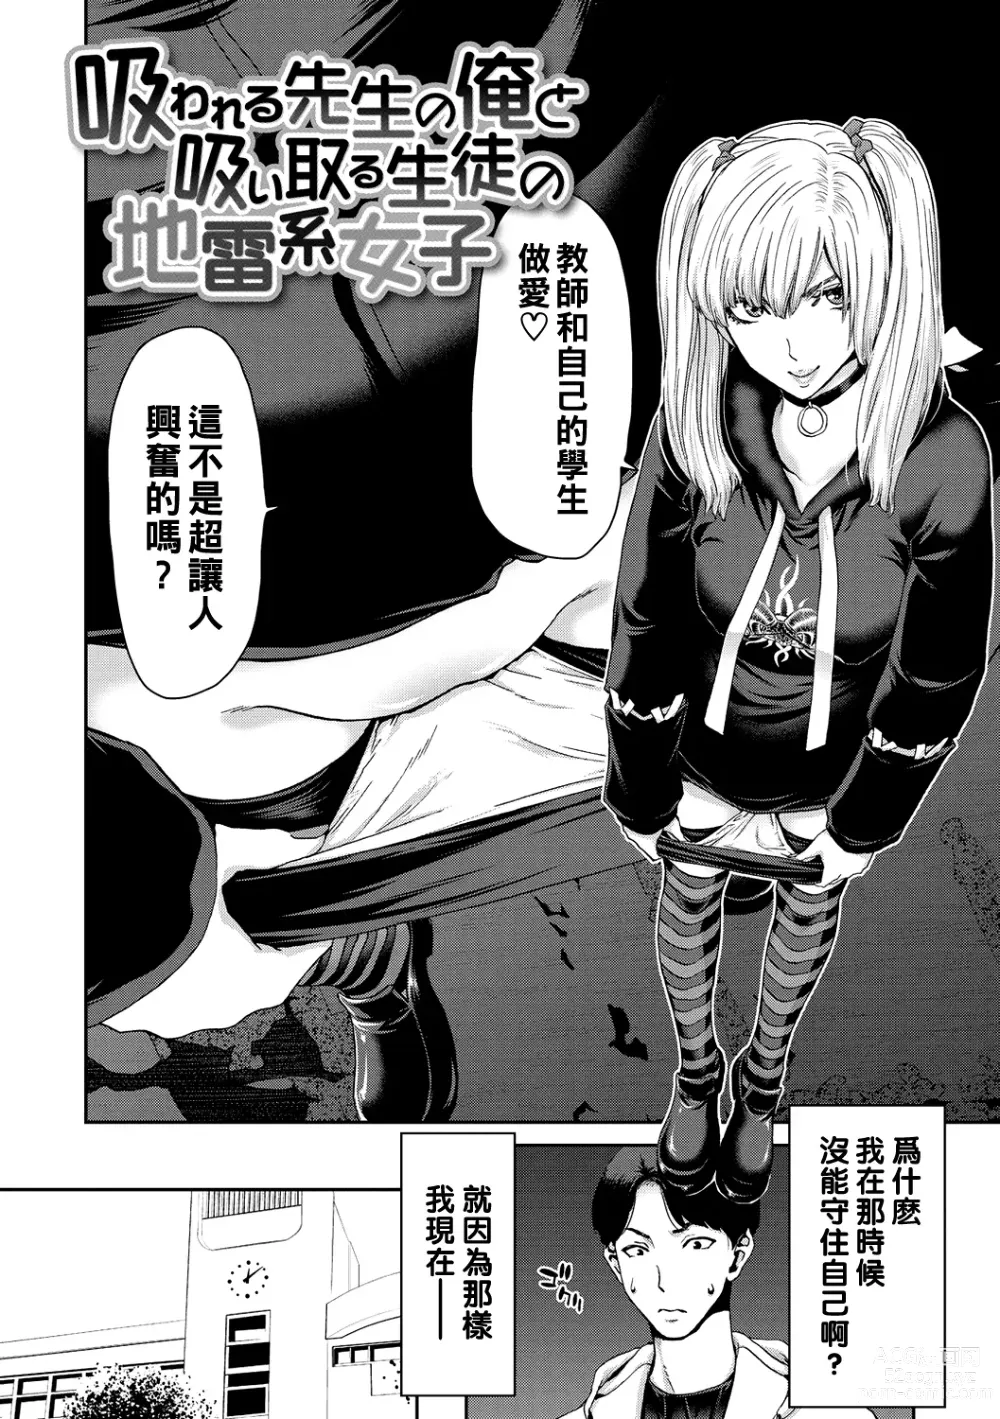 Page 6 of manga Shiyokka Hametsu SEX